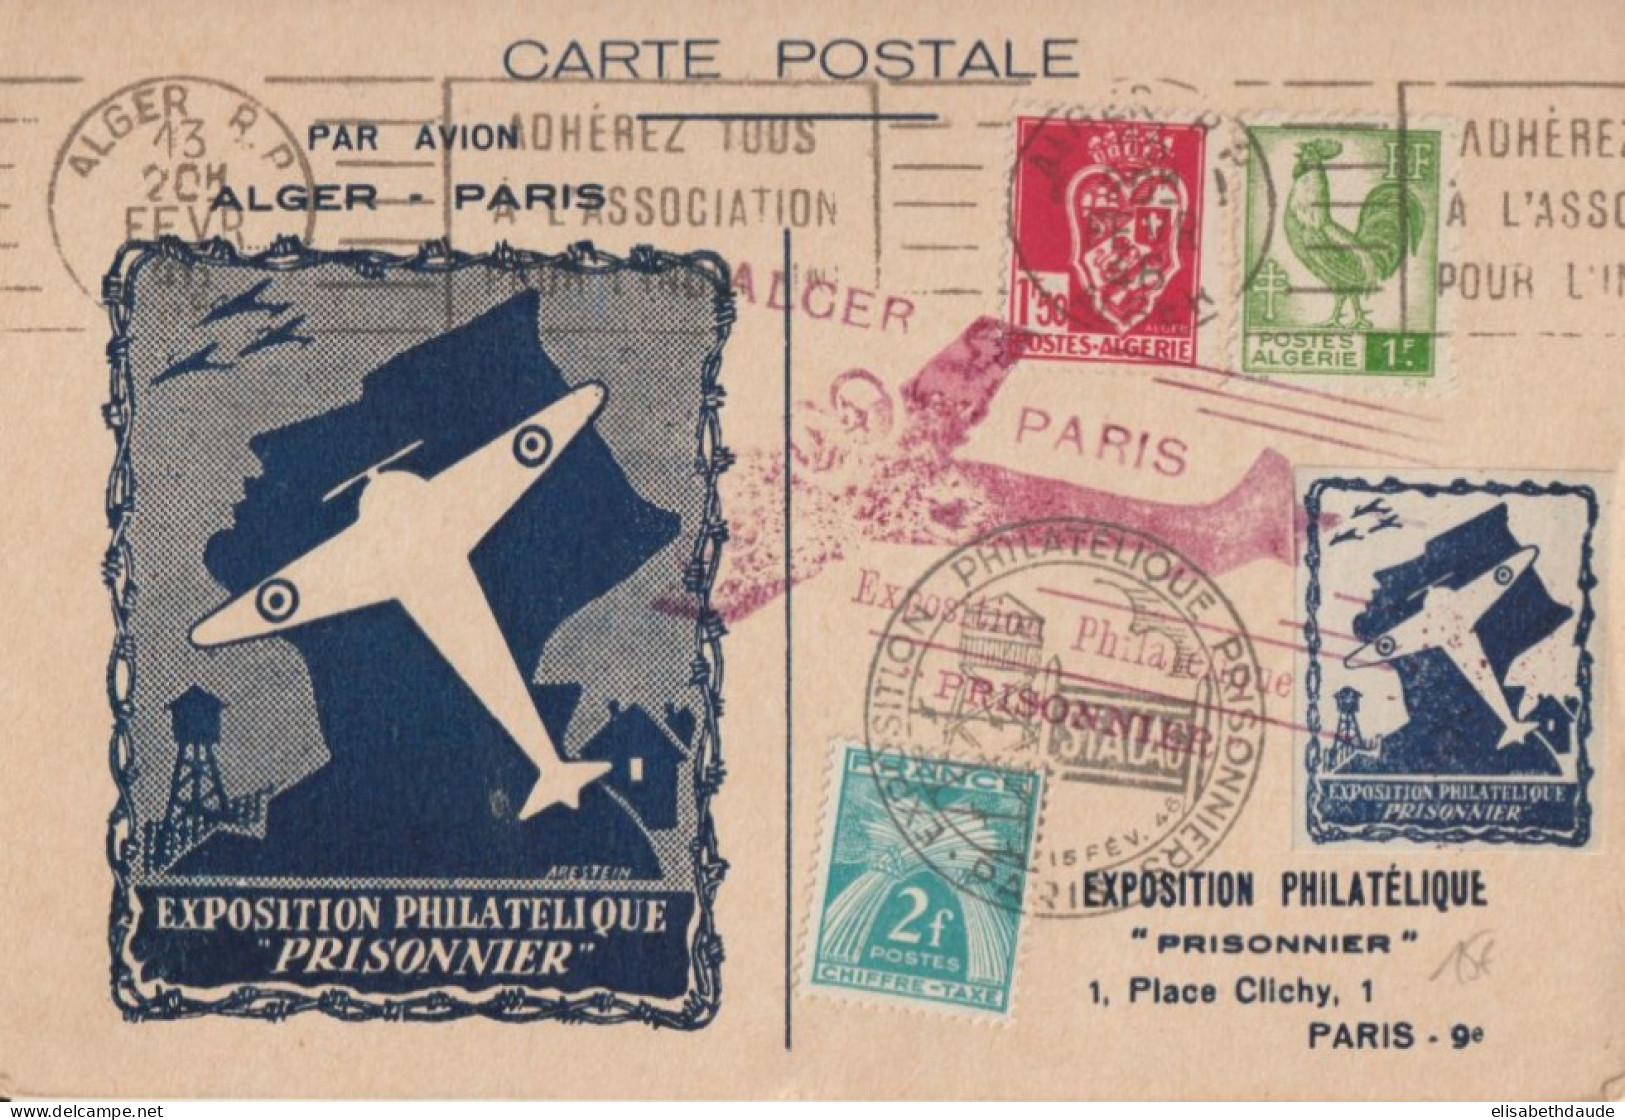 1945 - EXPO PRISONNIERS GUERRE - VIGNETTE AVIATION Sur CARTE VOL AERIEN ALGER à PARIS ! - TAXE GERBES - Aviation